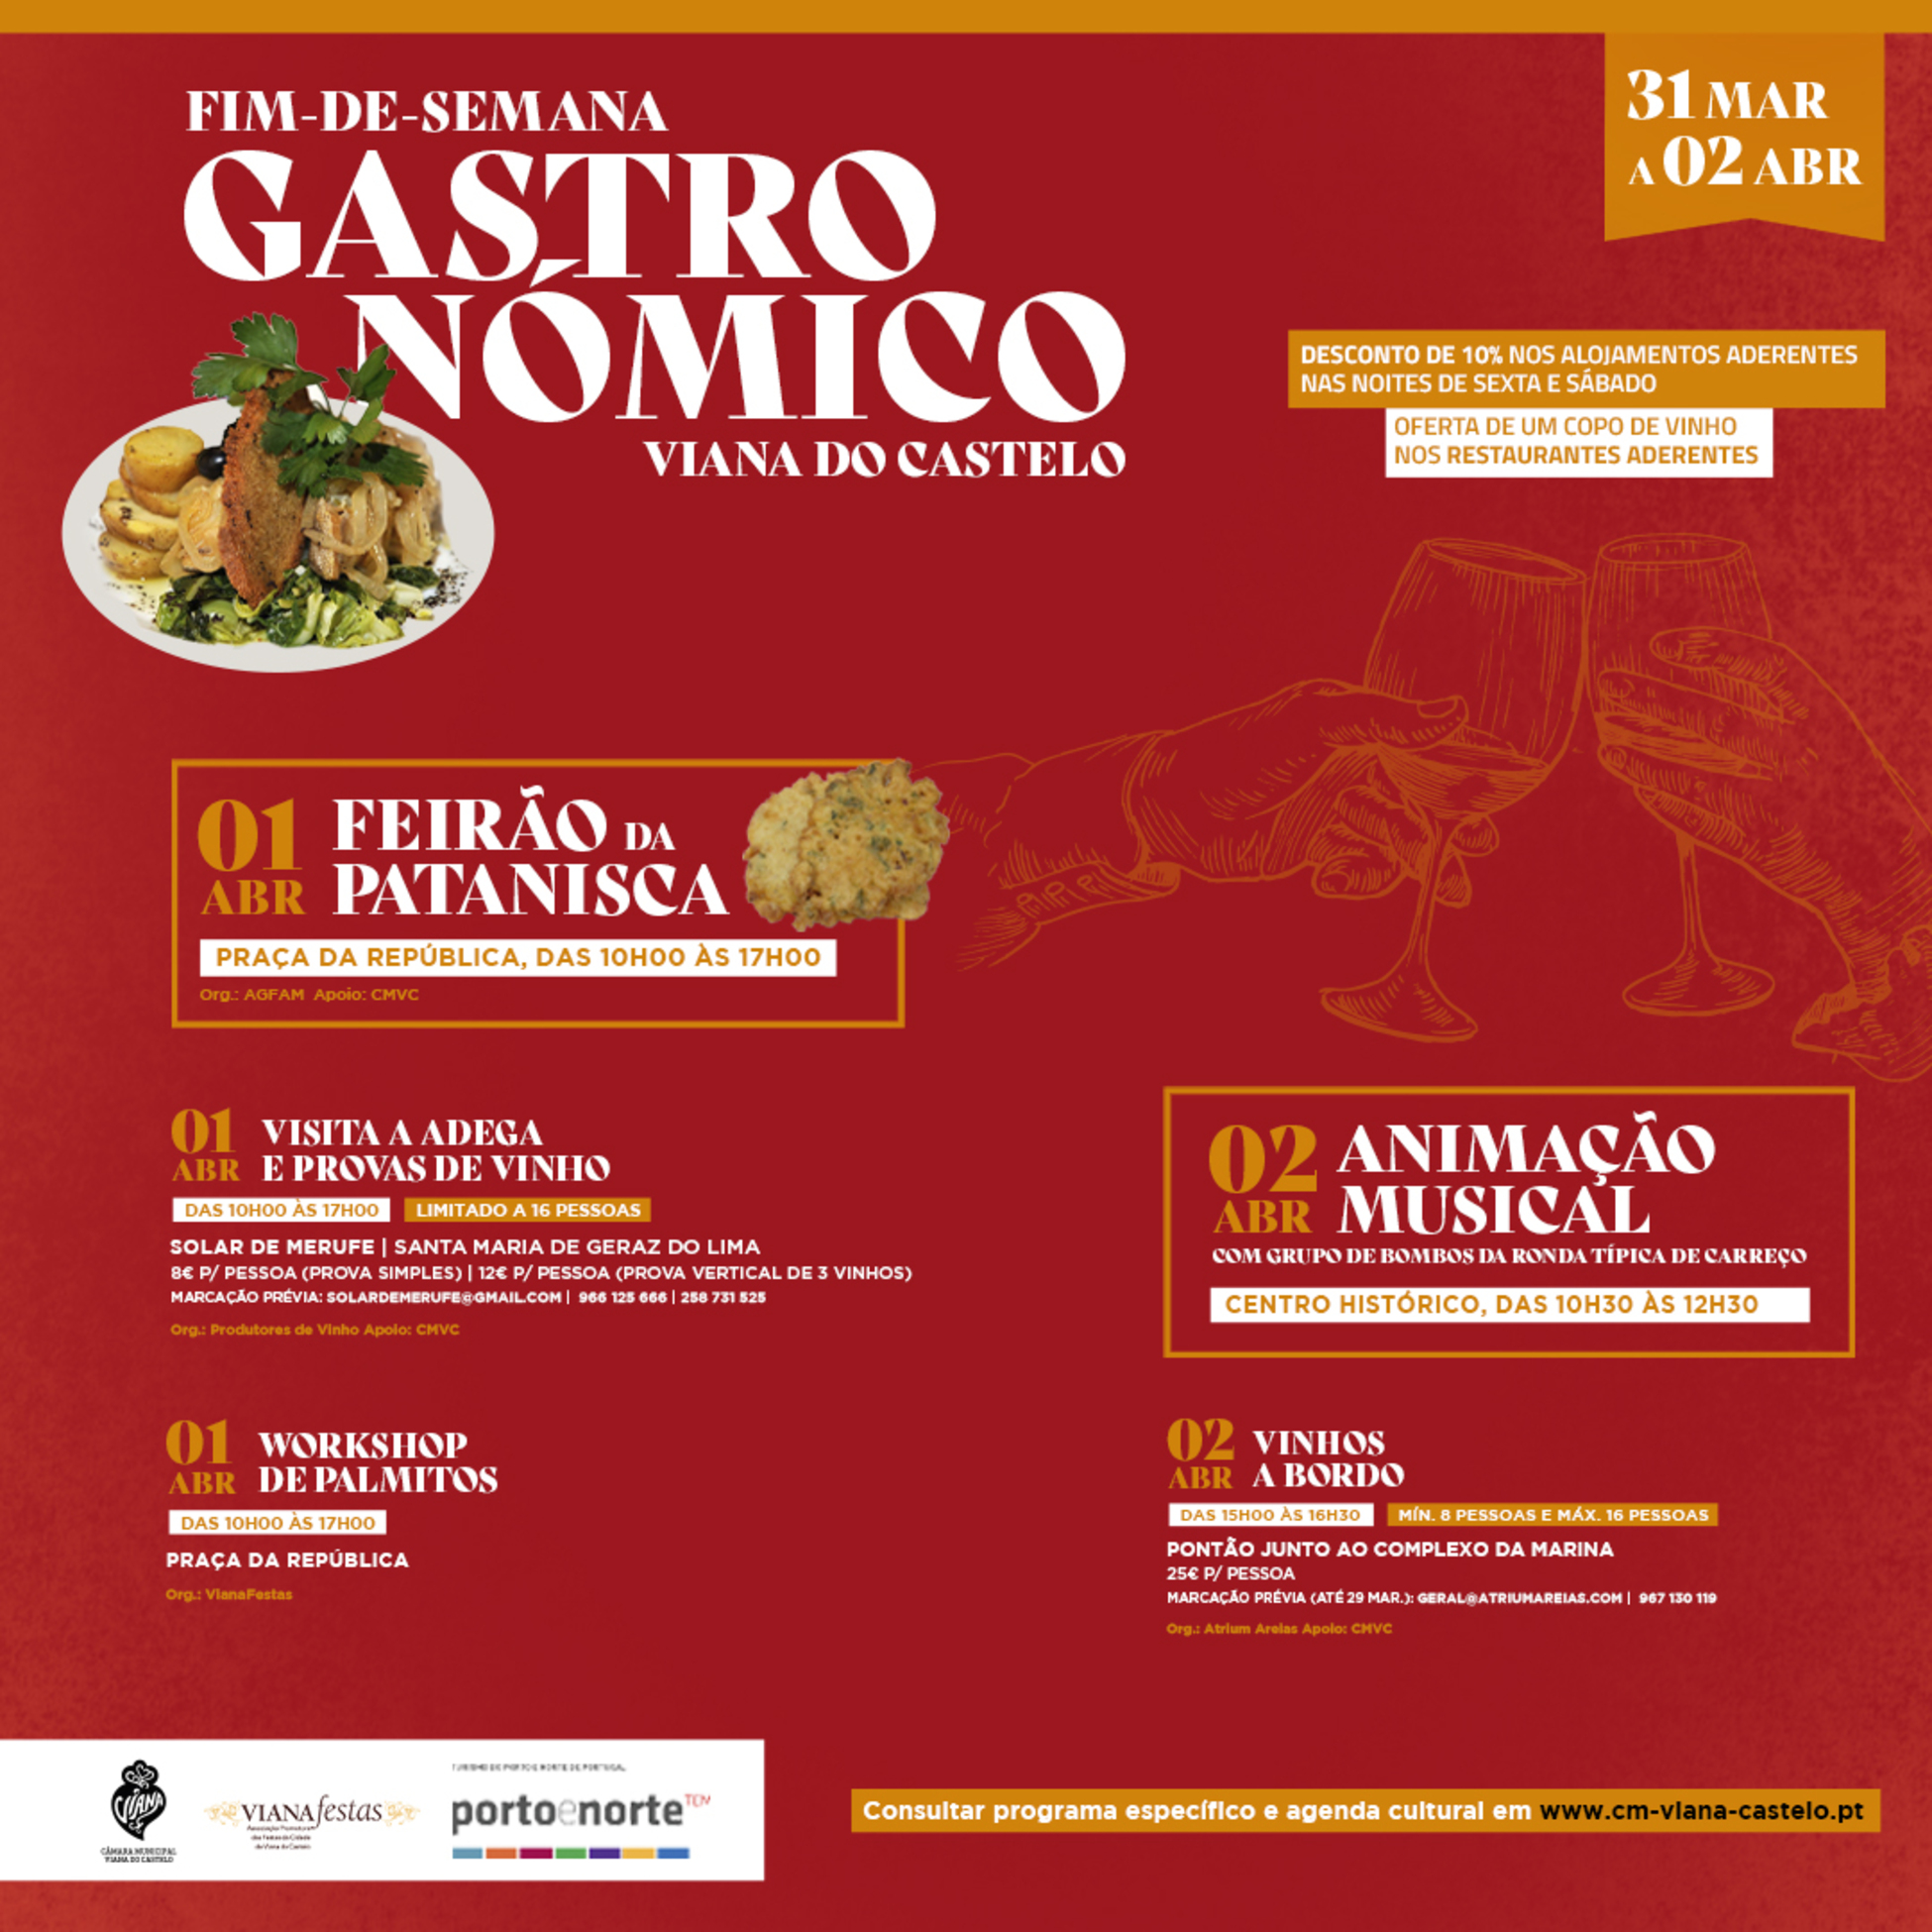 Fim-de-semana Gastronómico de Viana do Castelo de 31 de março a 2 de abril